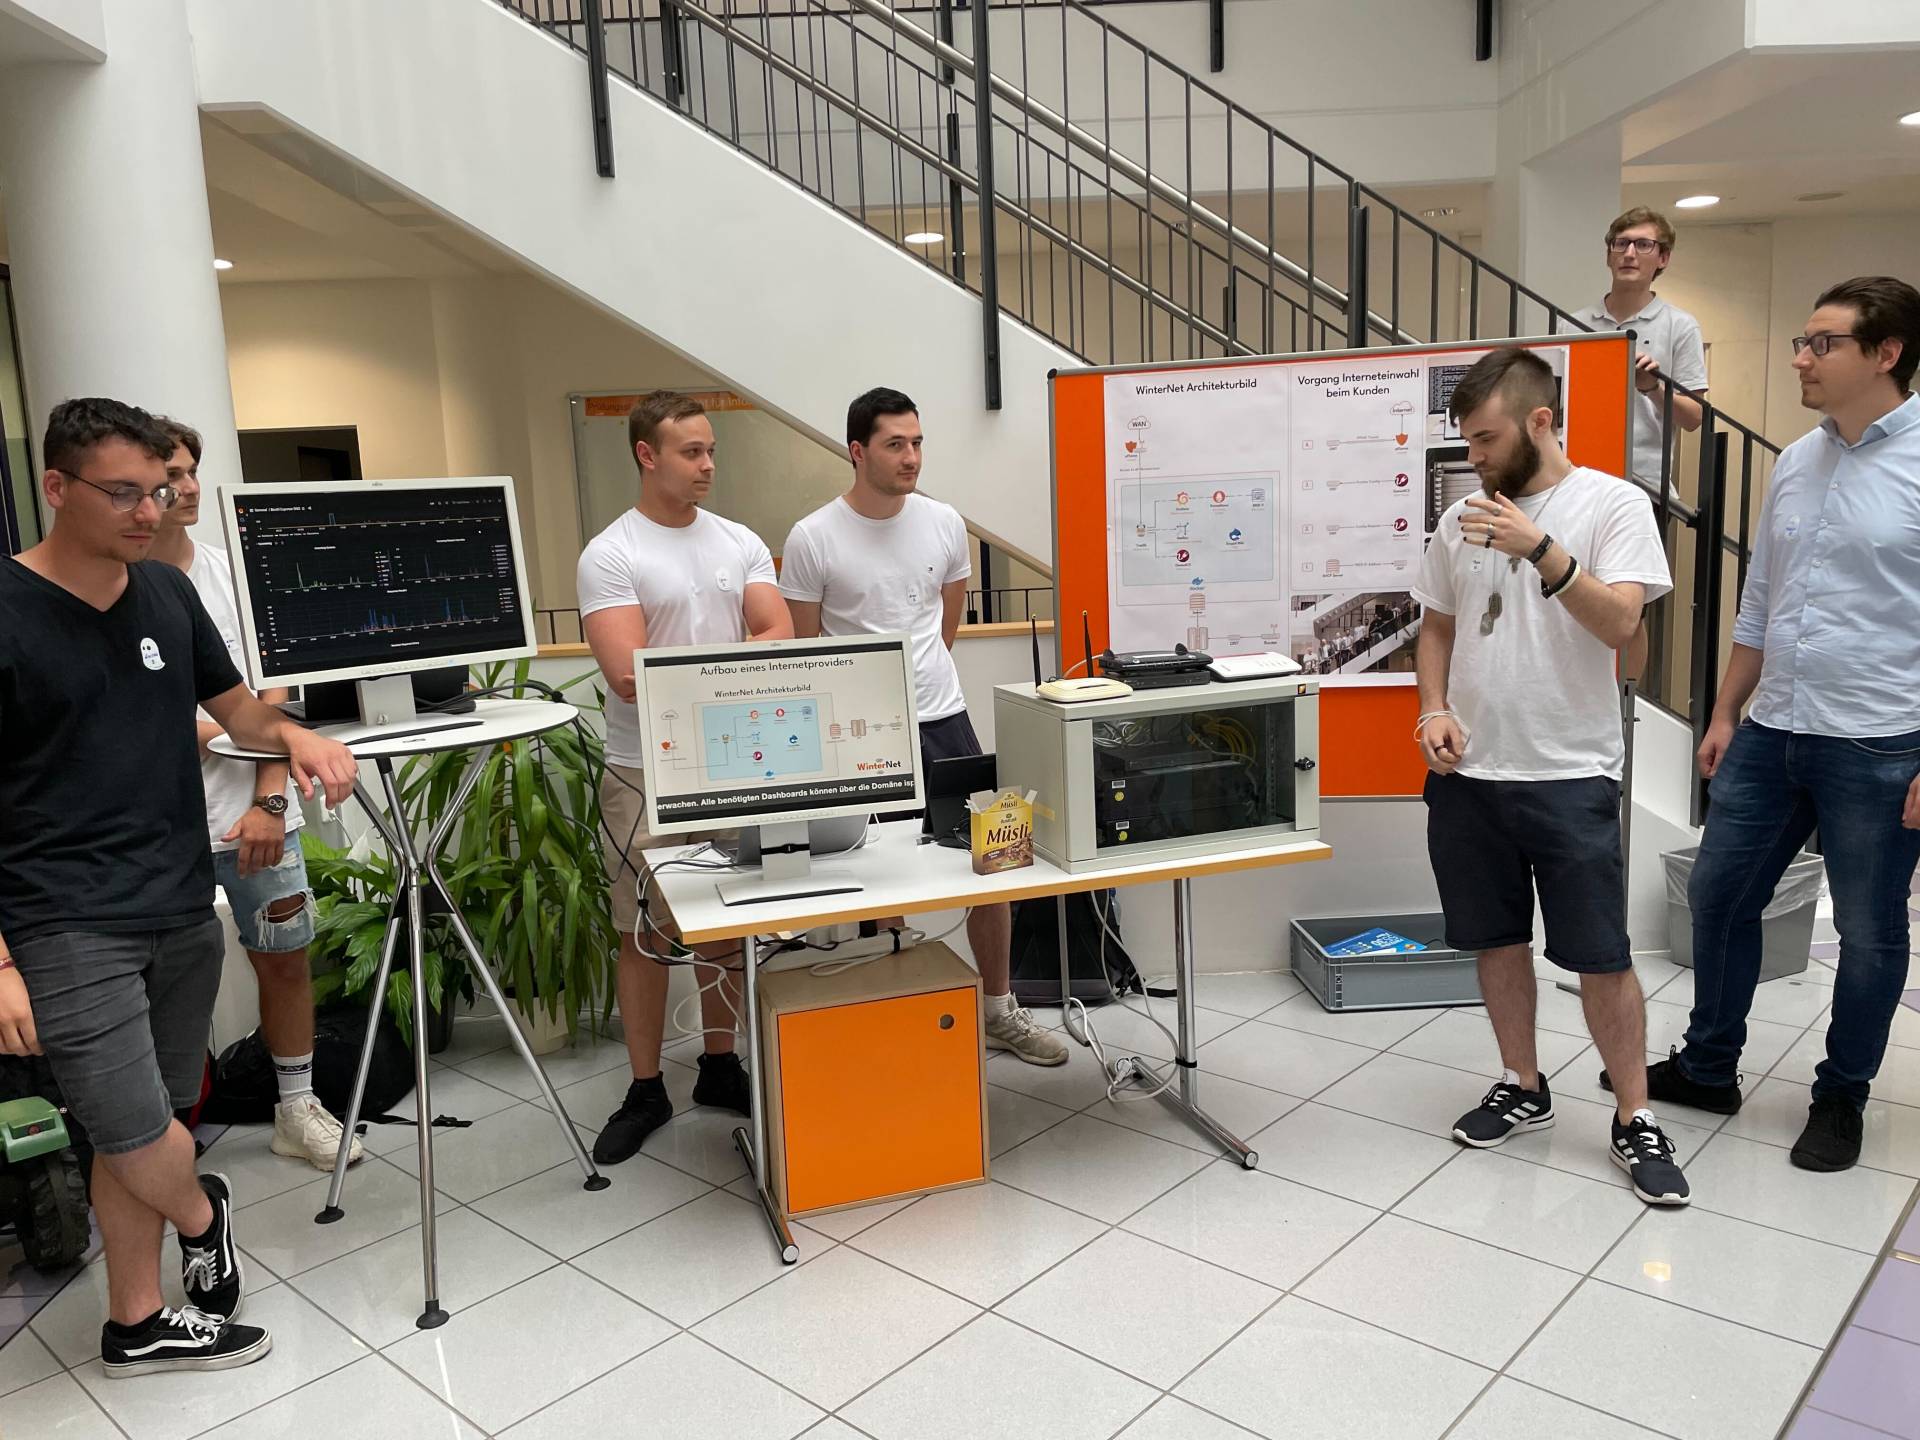 Studierende der Fakultät für Informatik an der Hochschule Augsburg präsentieren ihr Semesterprojekt.